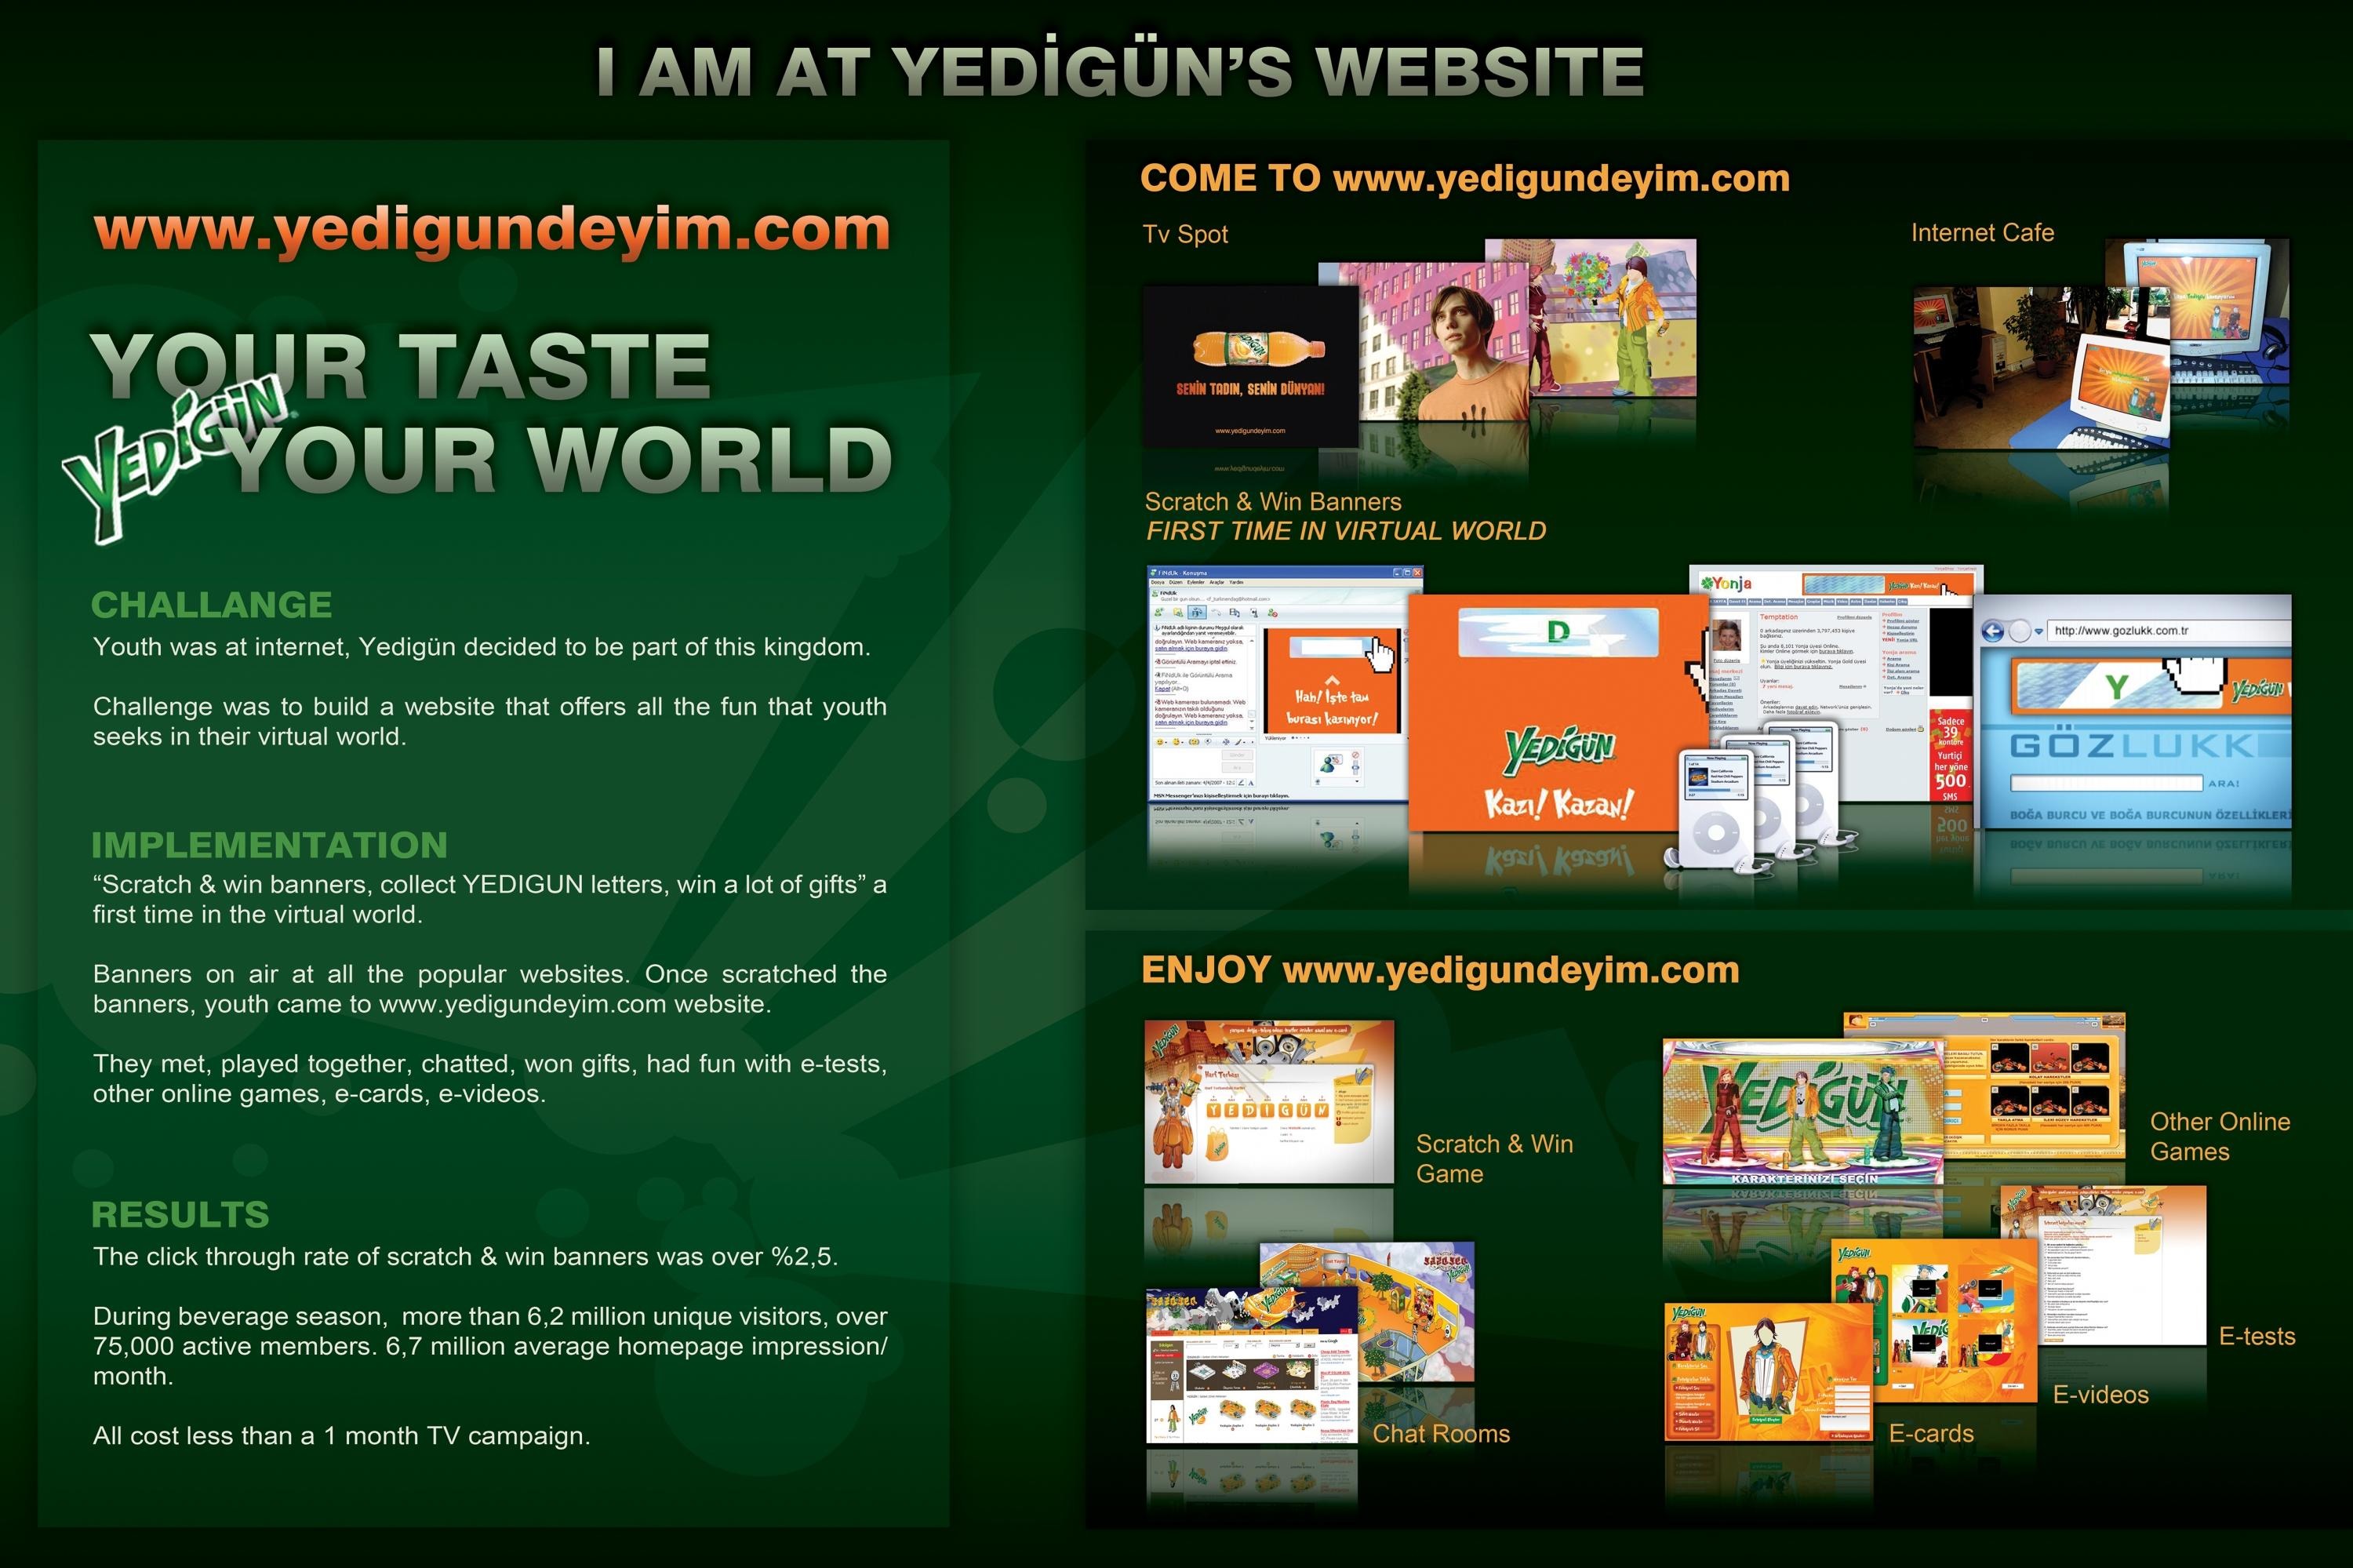 YEDIGUN'S WEBSITE